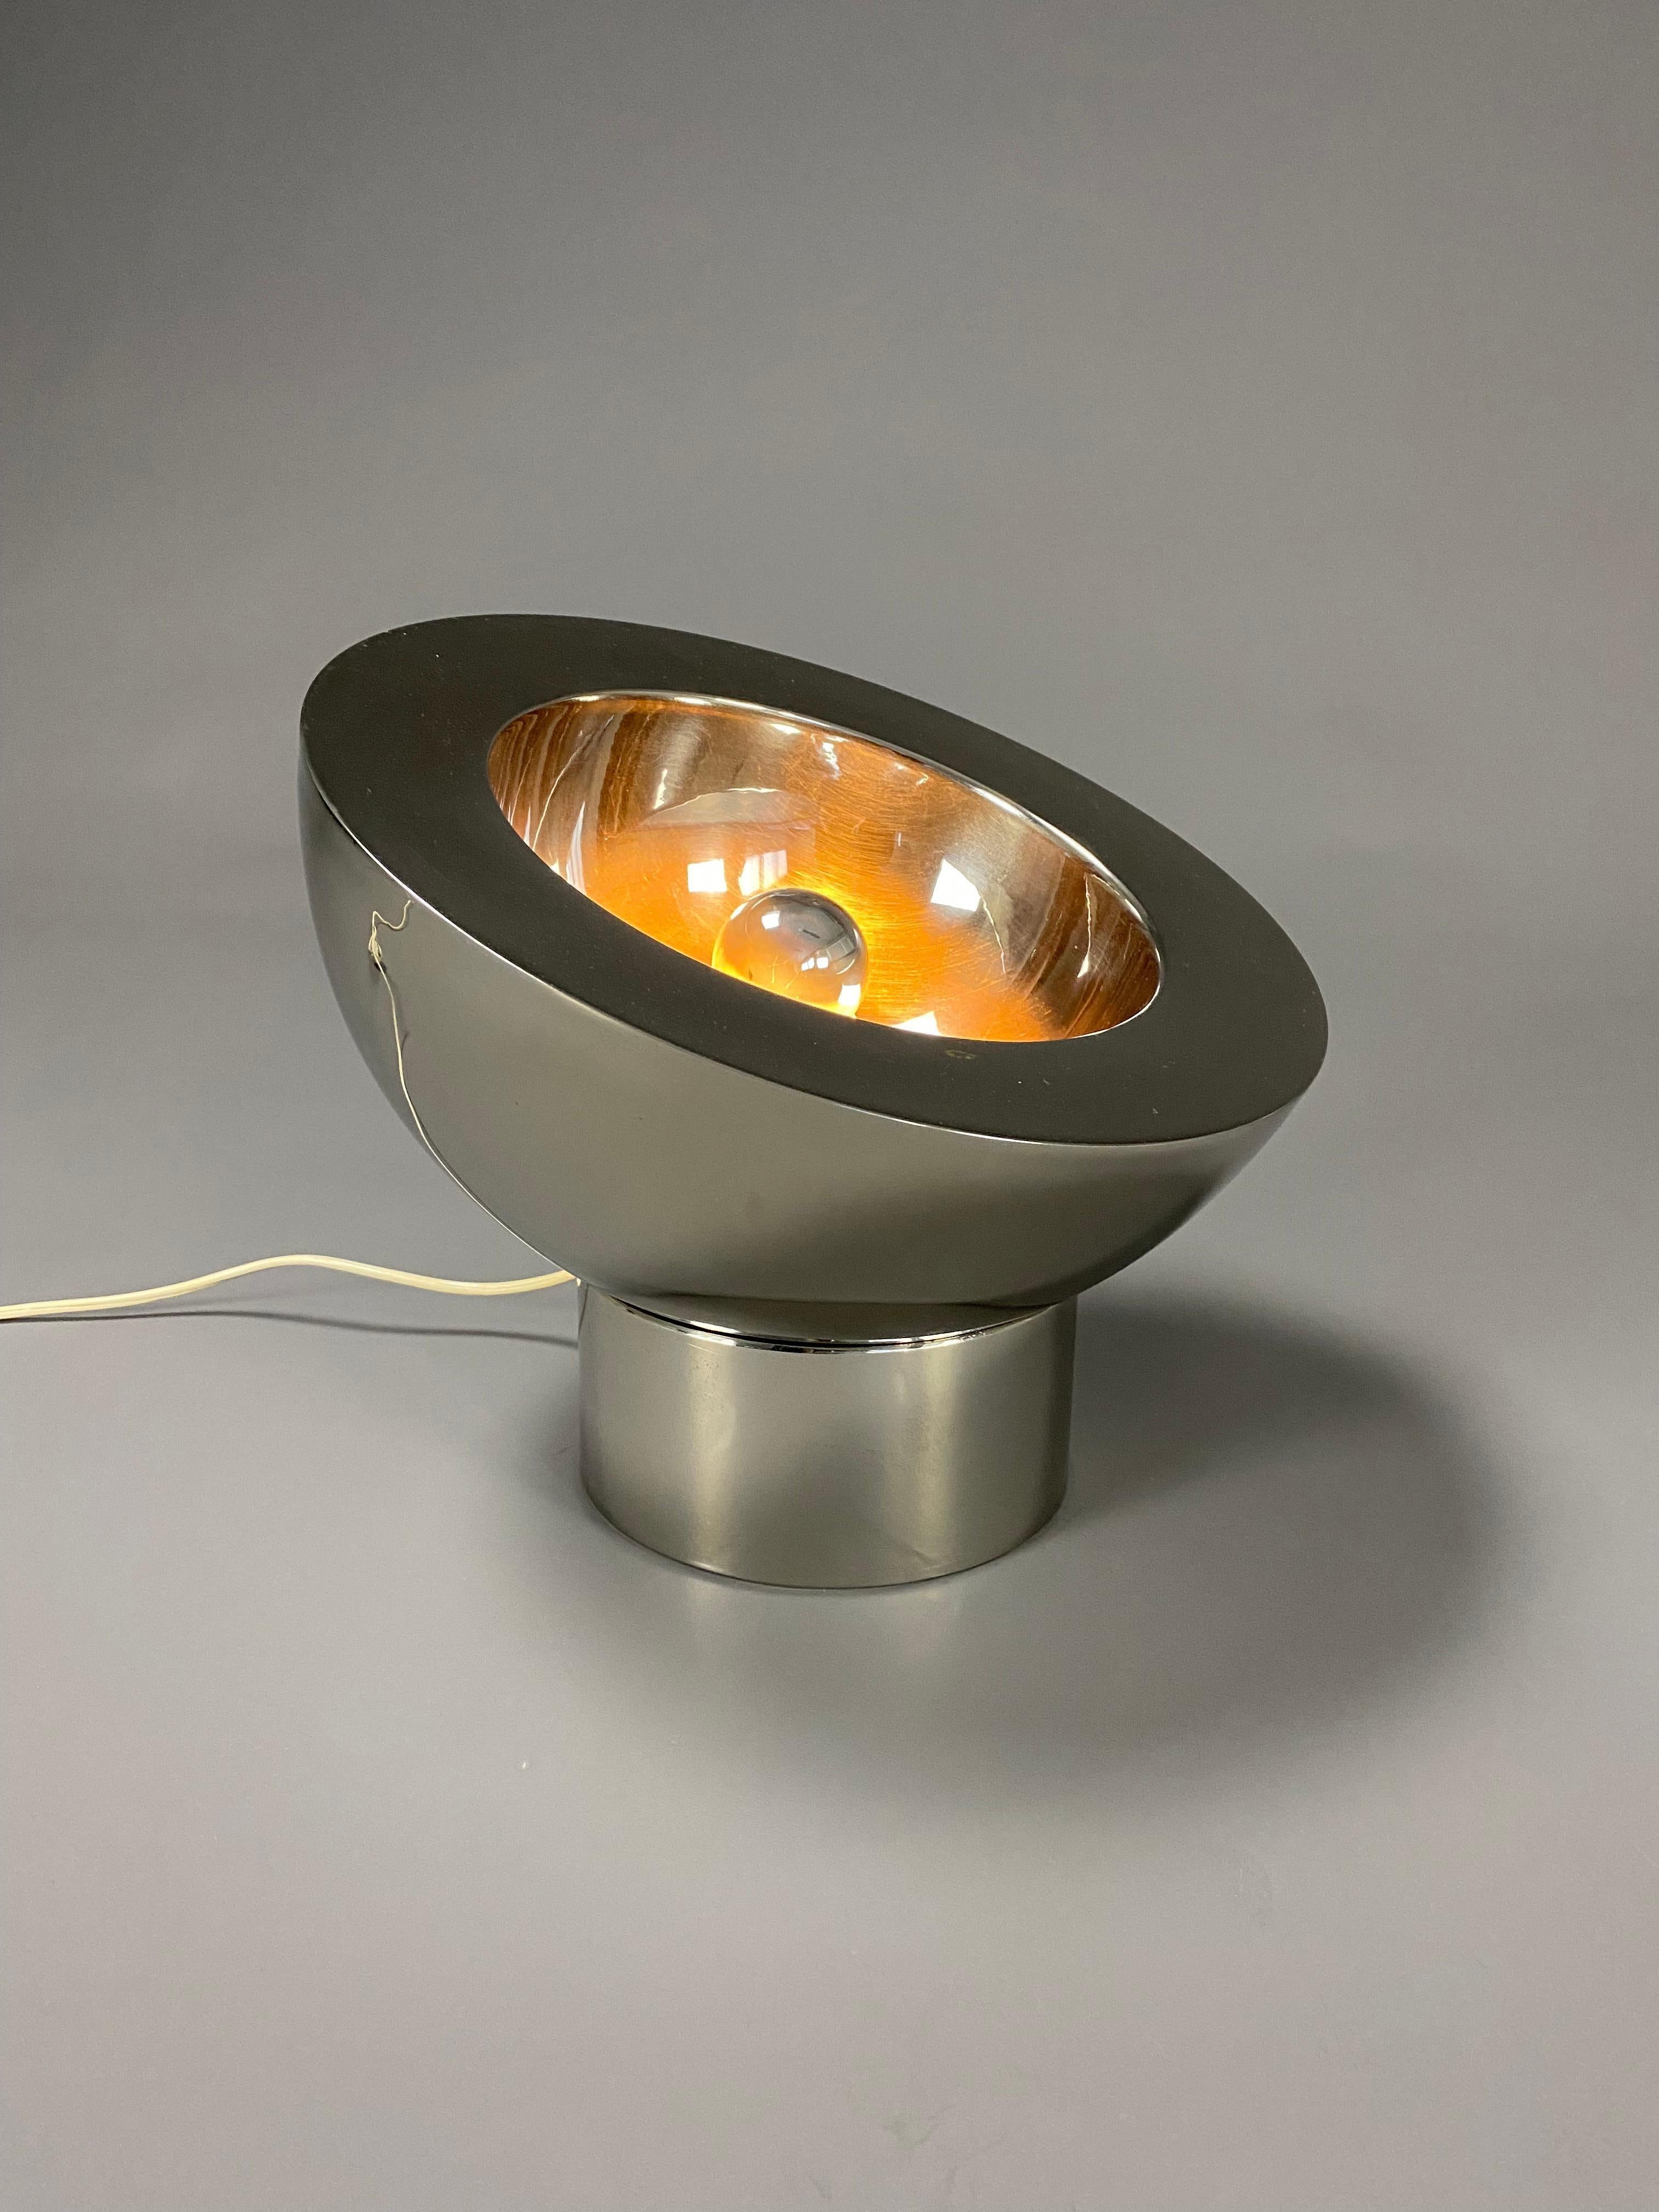 Élégante lampe de table italienne réglable en laiton nickelé. La demi-sphère repose sur sa base ronde nickelée qui comporte une ouverture par laquelle le cordon électrique passe de la lampe à la prise murale.
La lampe est un véritable